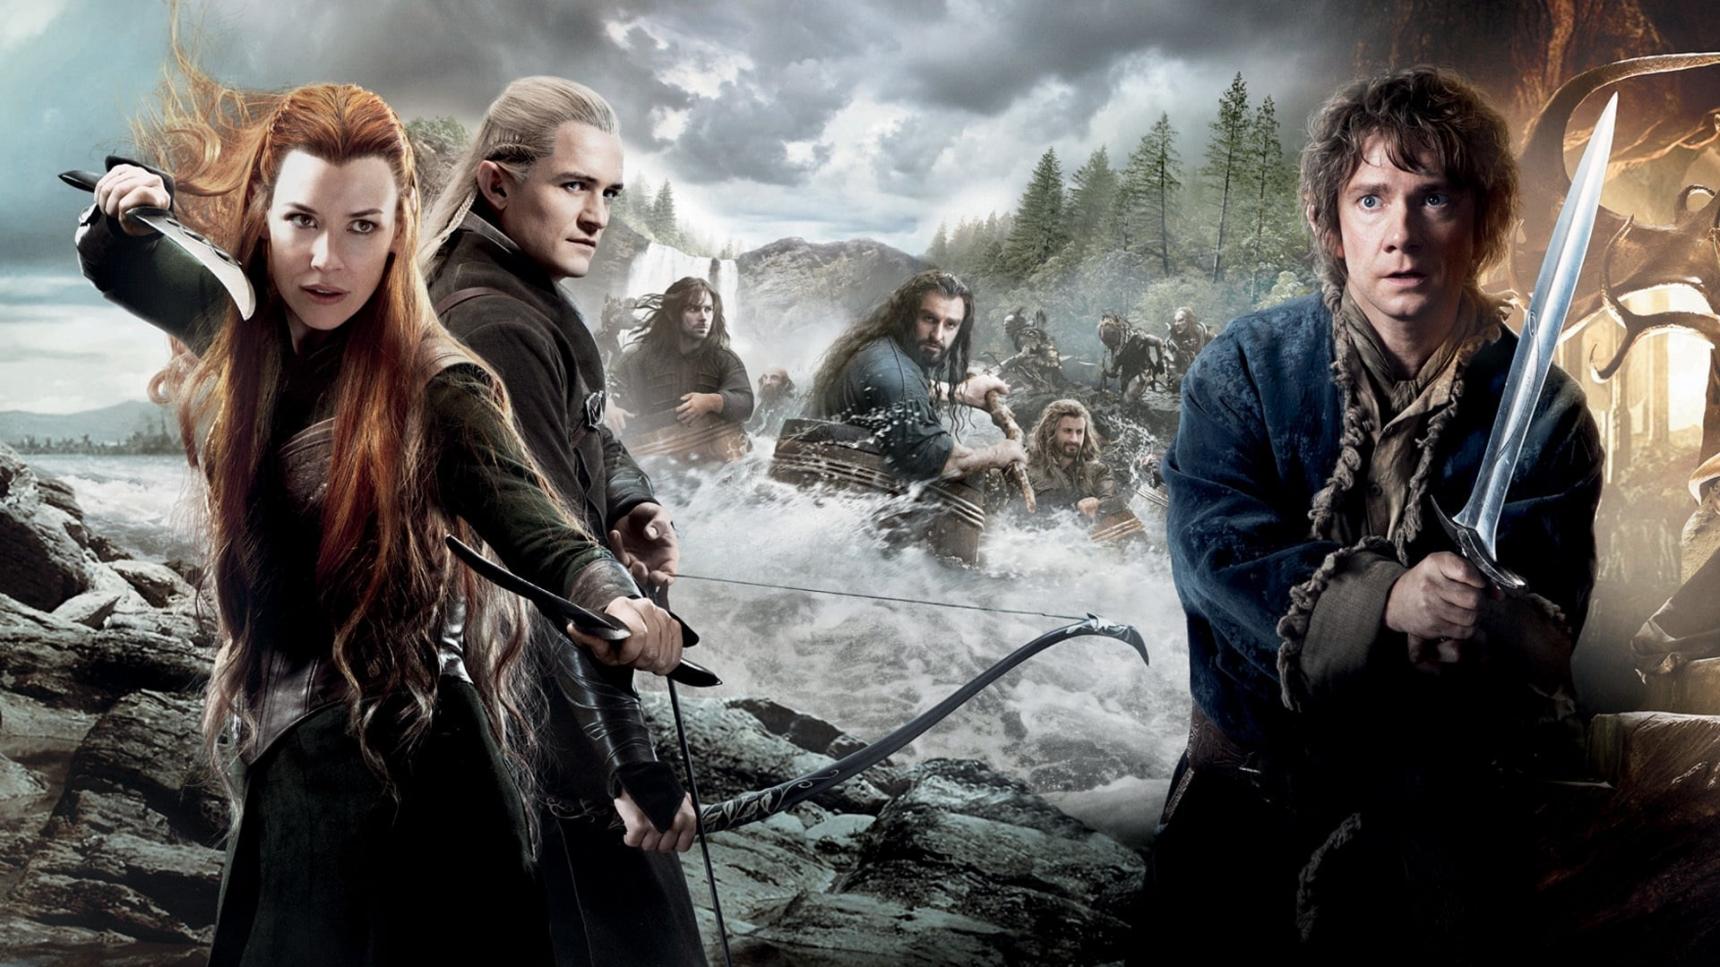 Fondo de pantalla de la película El hobbit: La desolación de Smaug en Cuevana 3 gratis